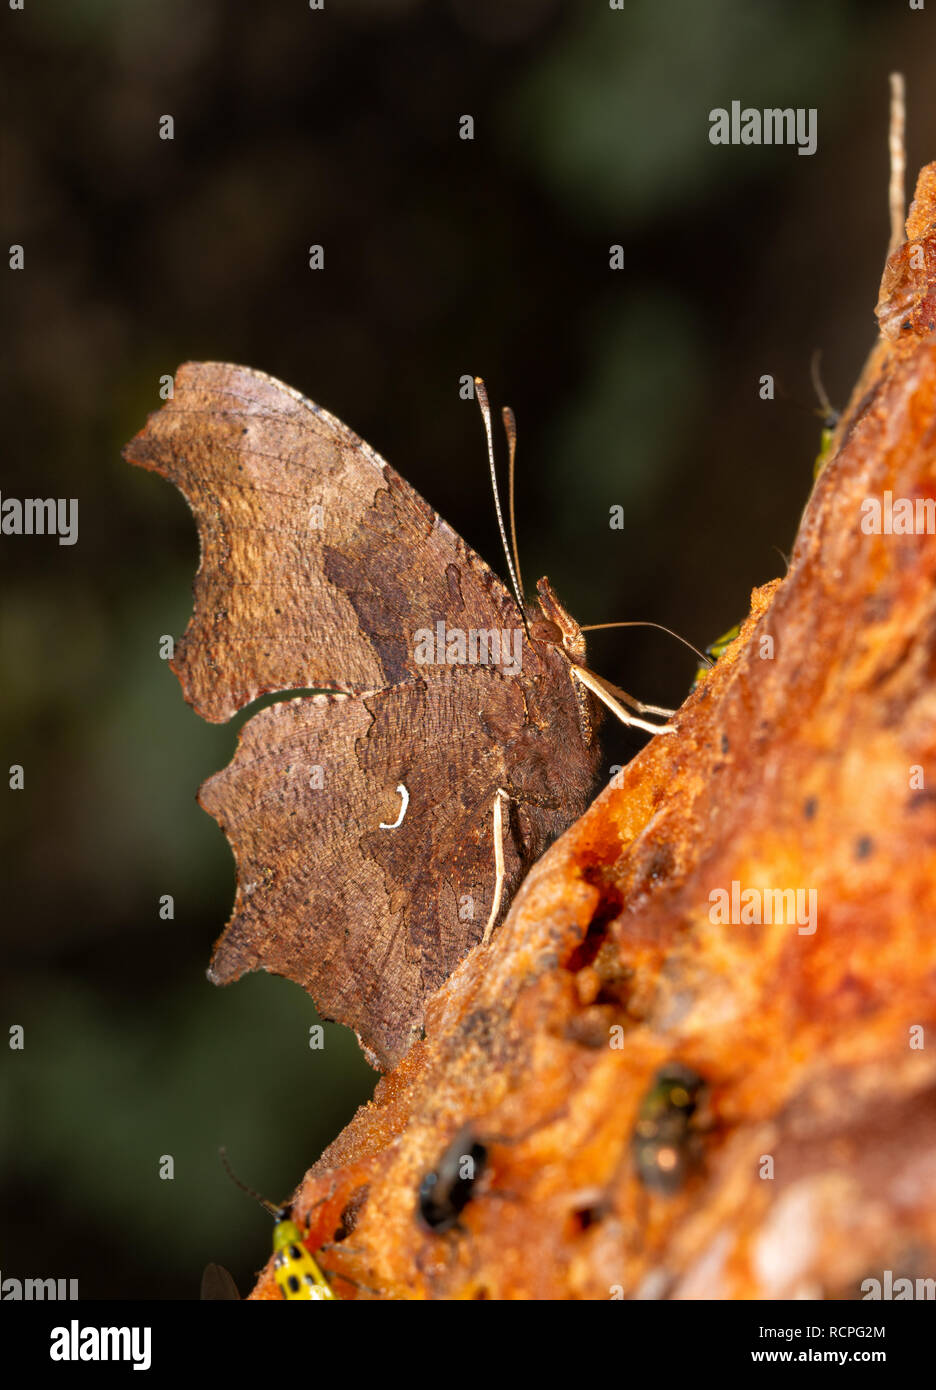 Vista ventral de una mariposa coma oriental la obtención de nutrientes a partir de pulpa de fruta de caqui Foto de stock